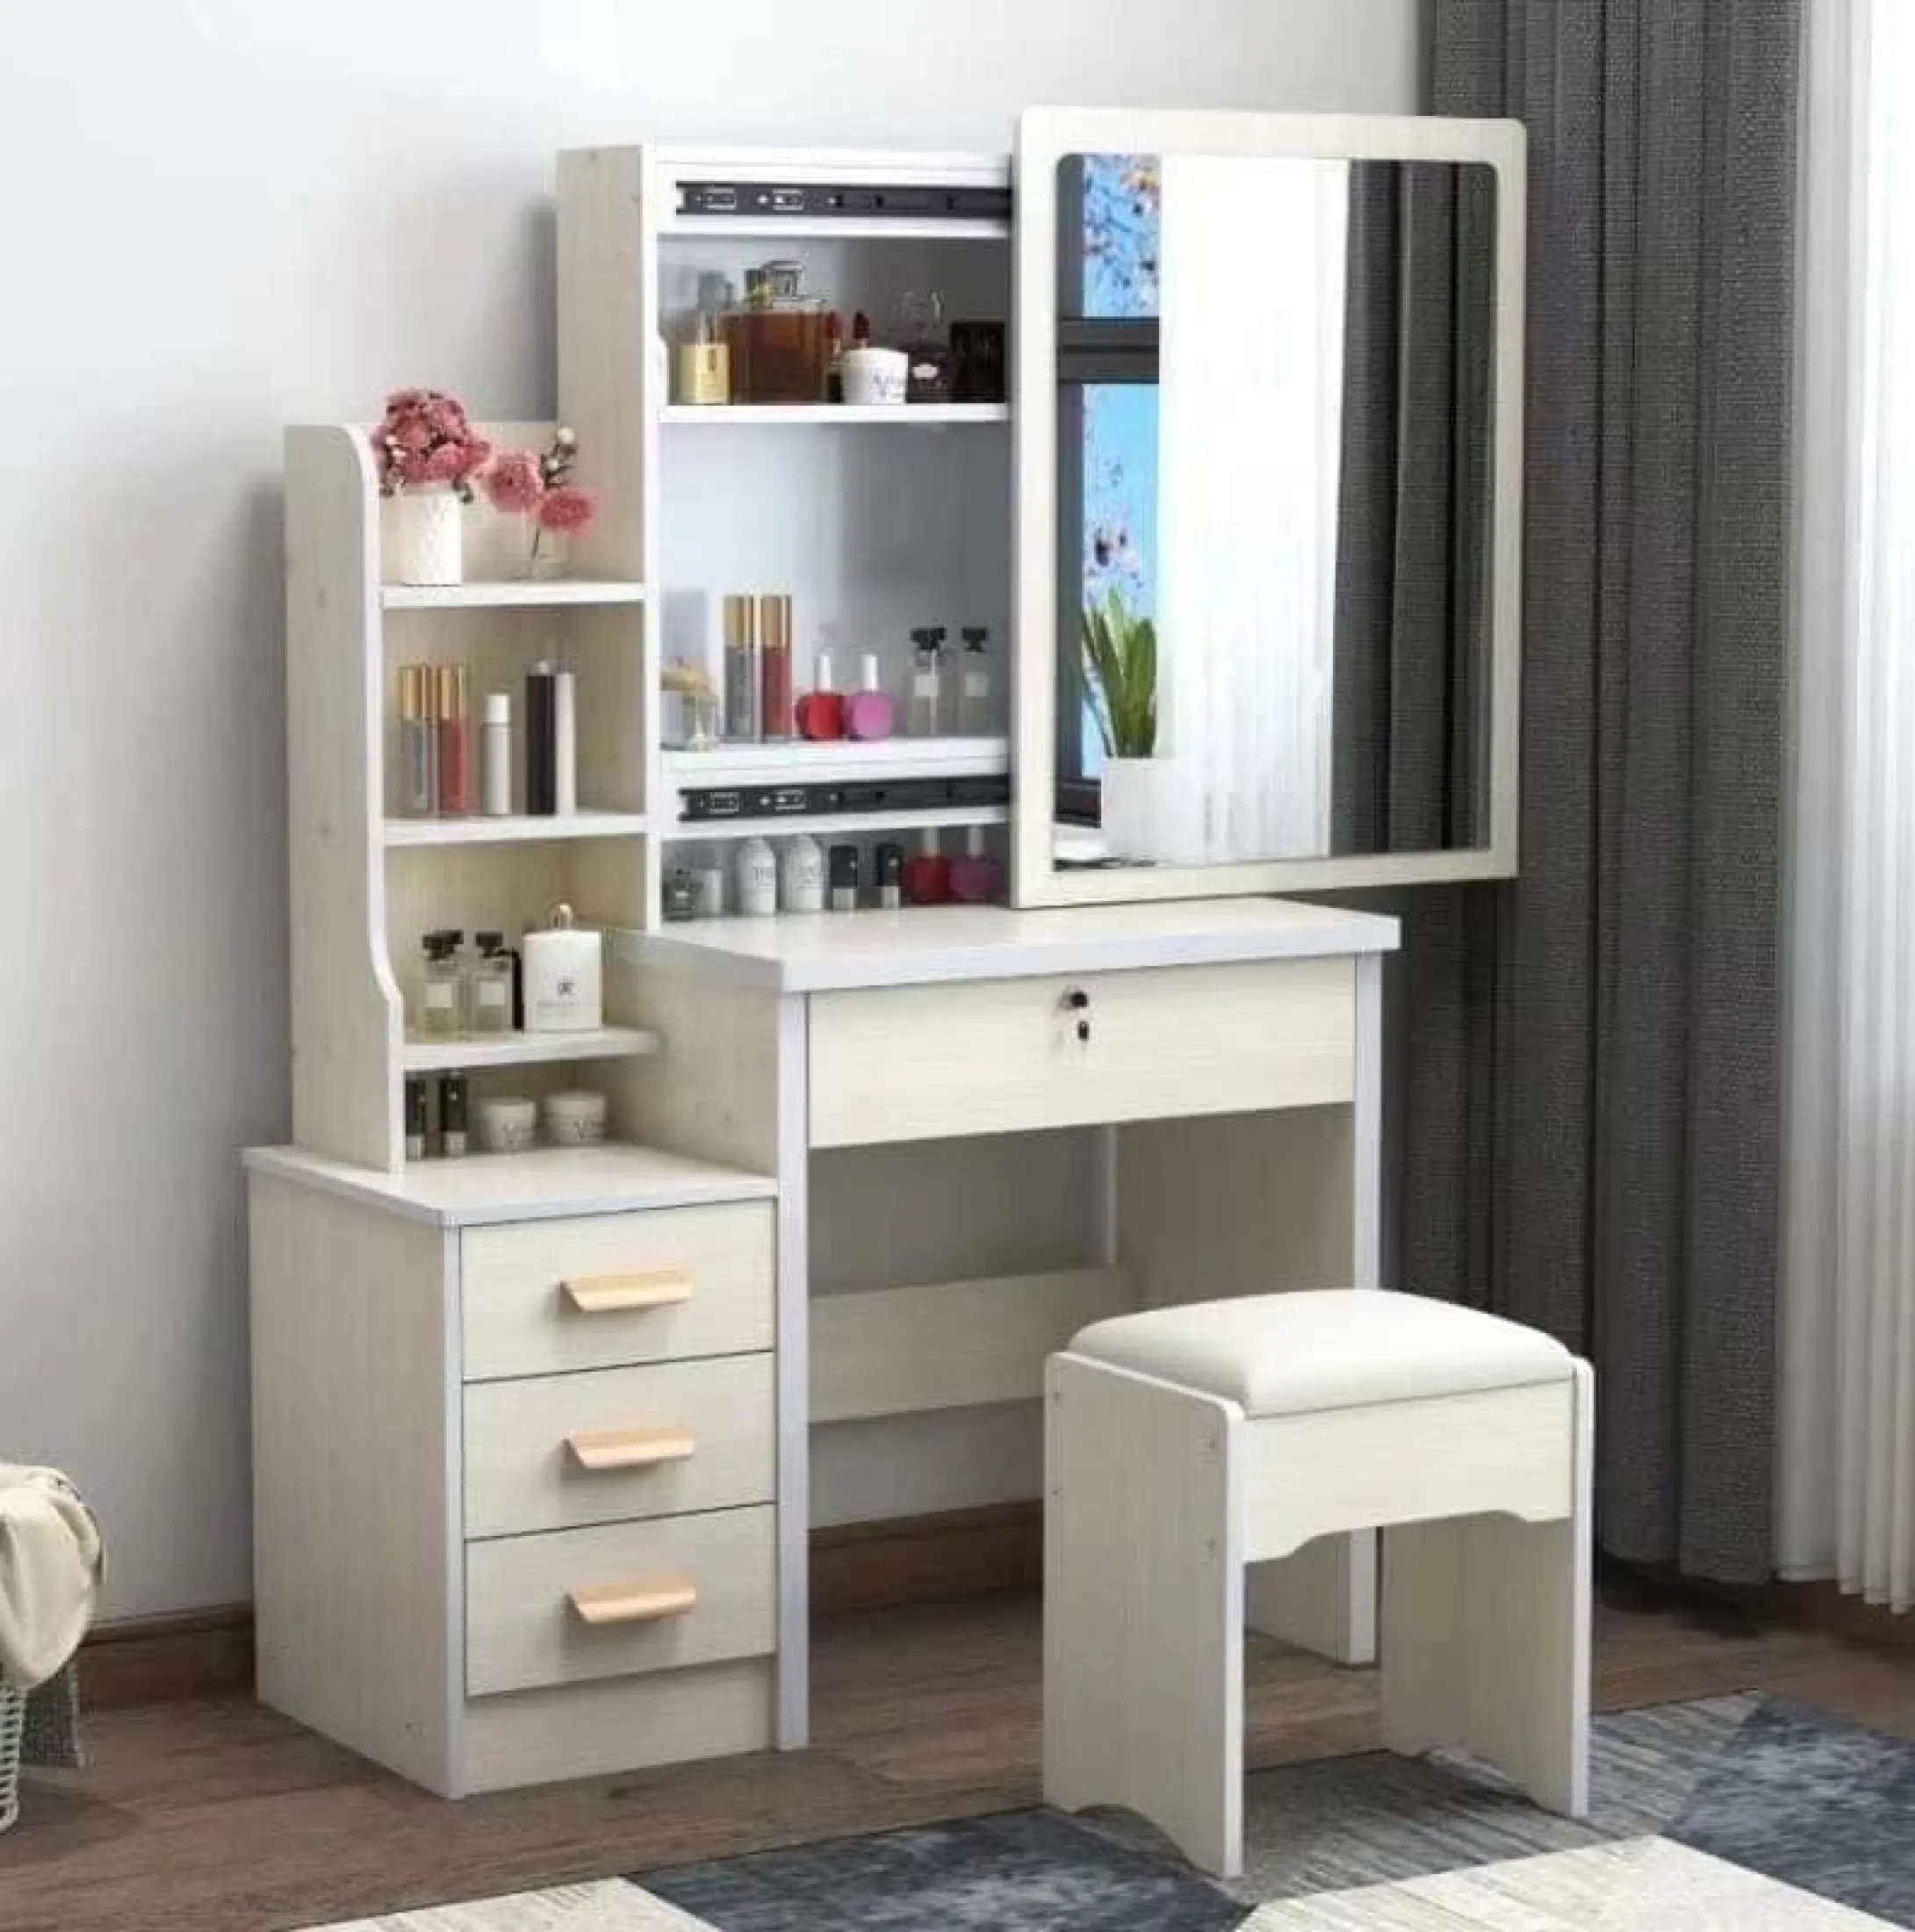 European Style Vanity Dresser Table, Dresser Vanity Combo Bedroom